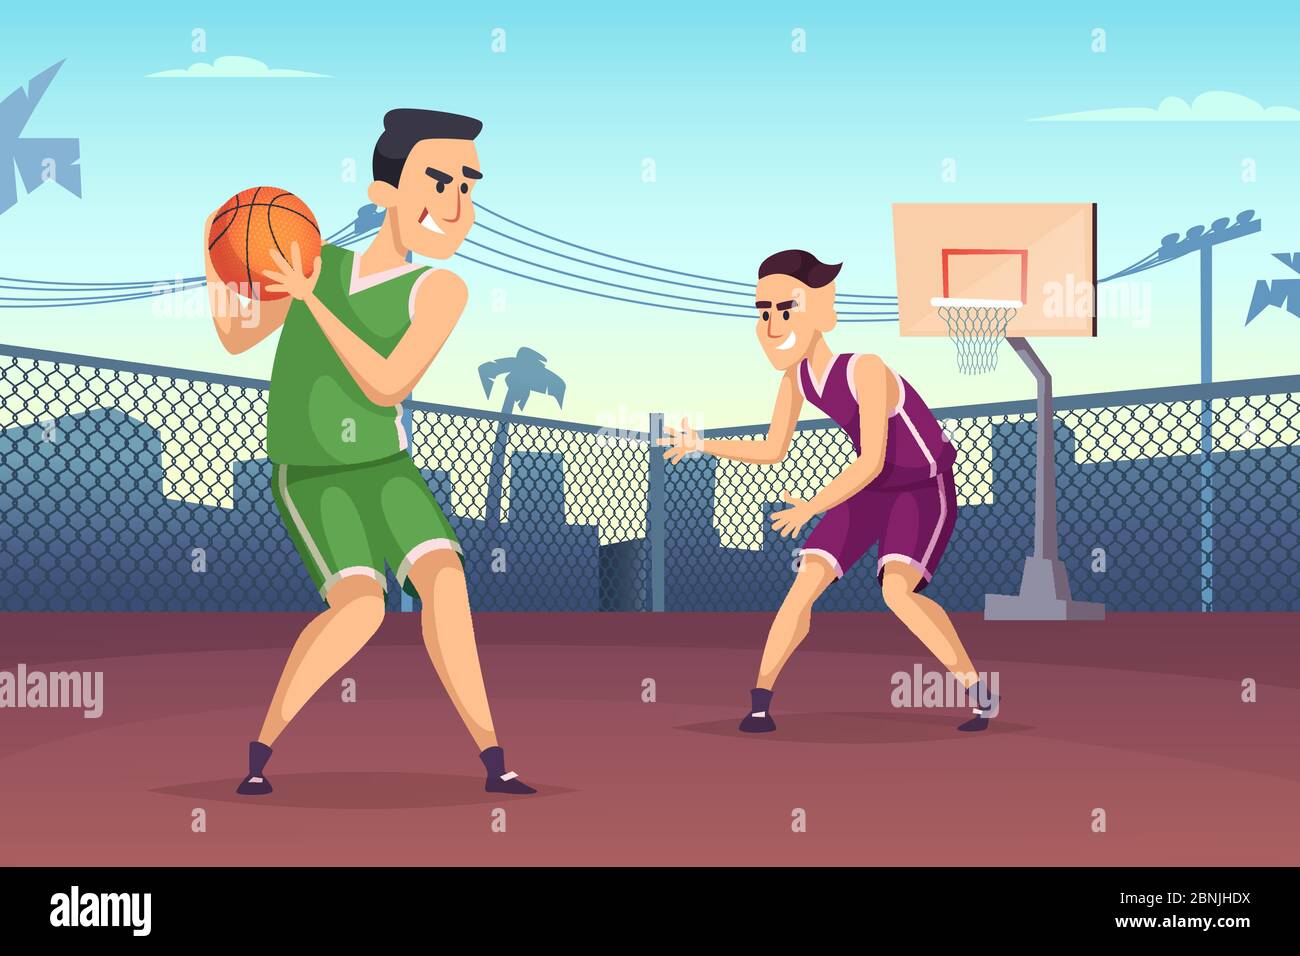 Illustrazioni di sfondo dei giocatori di basket che giocano sul campo Illustrazione Vettoriale